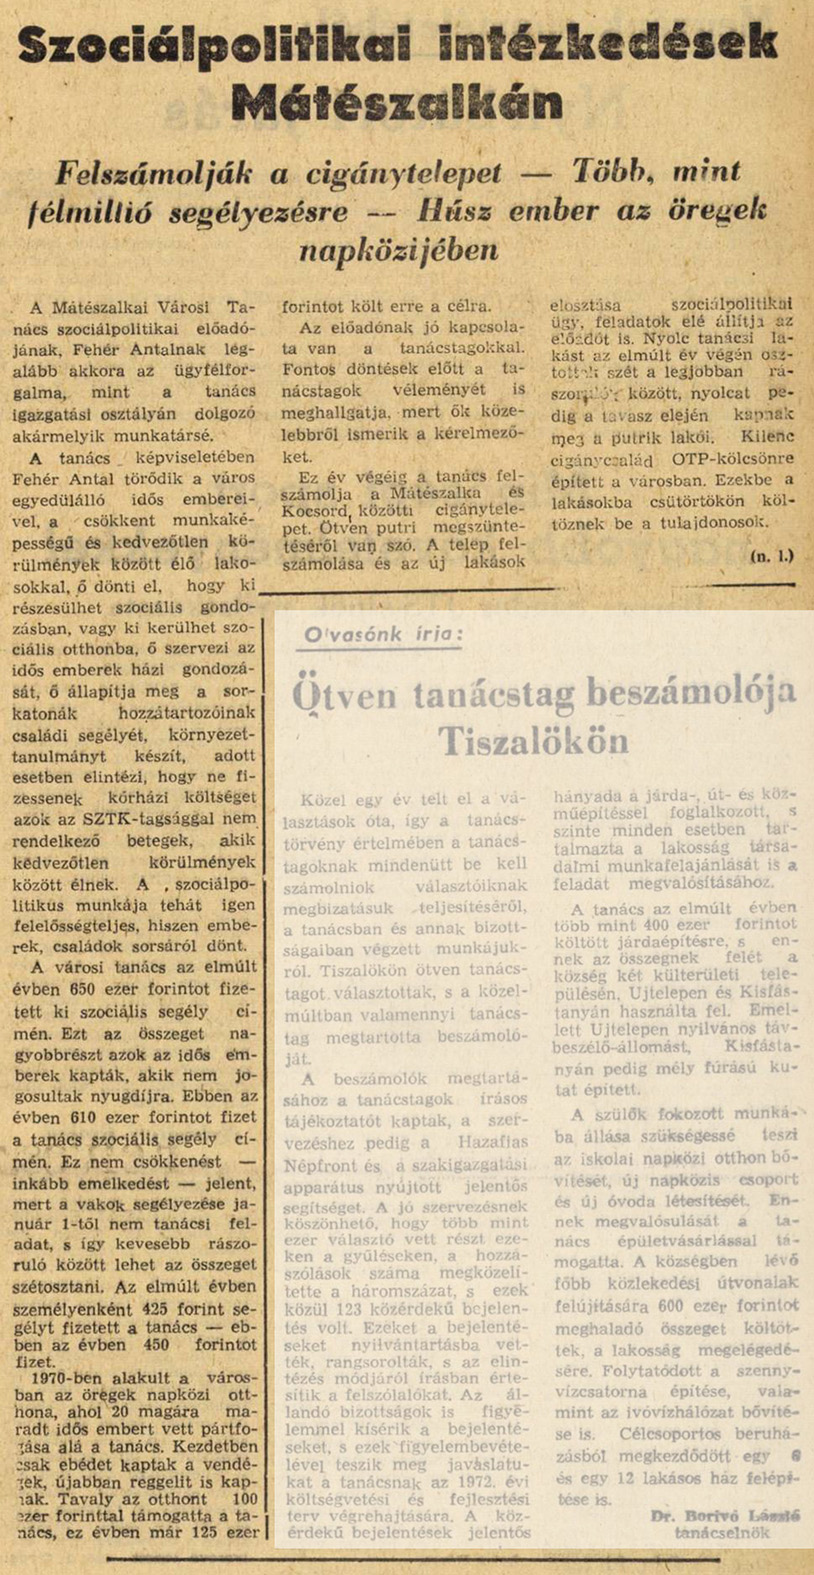 KeletMagyarorszag 1972 02 pages59 59